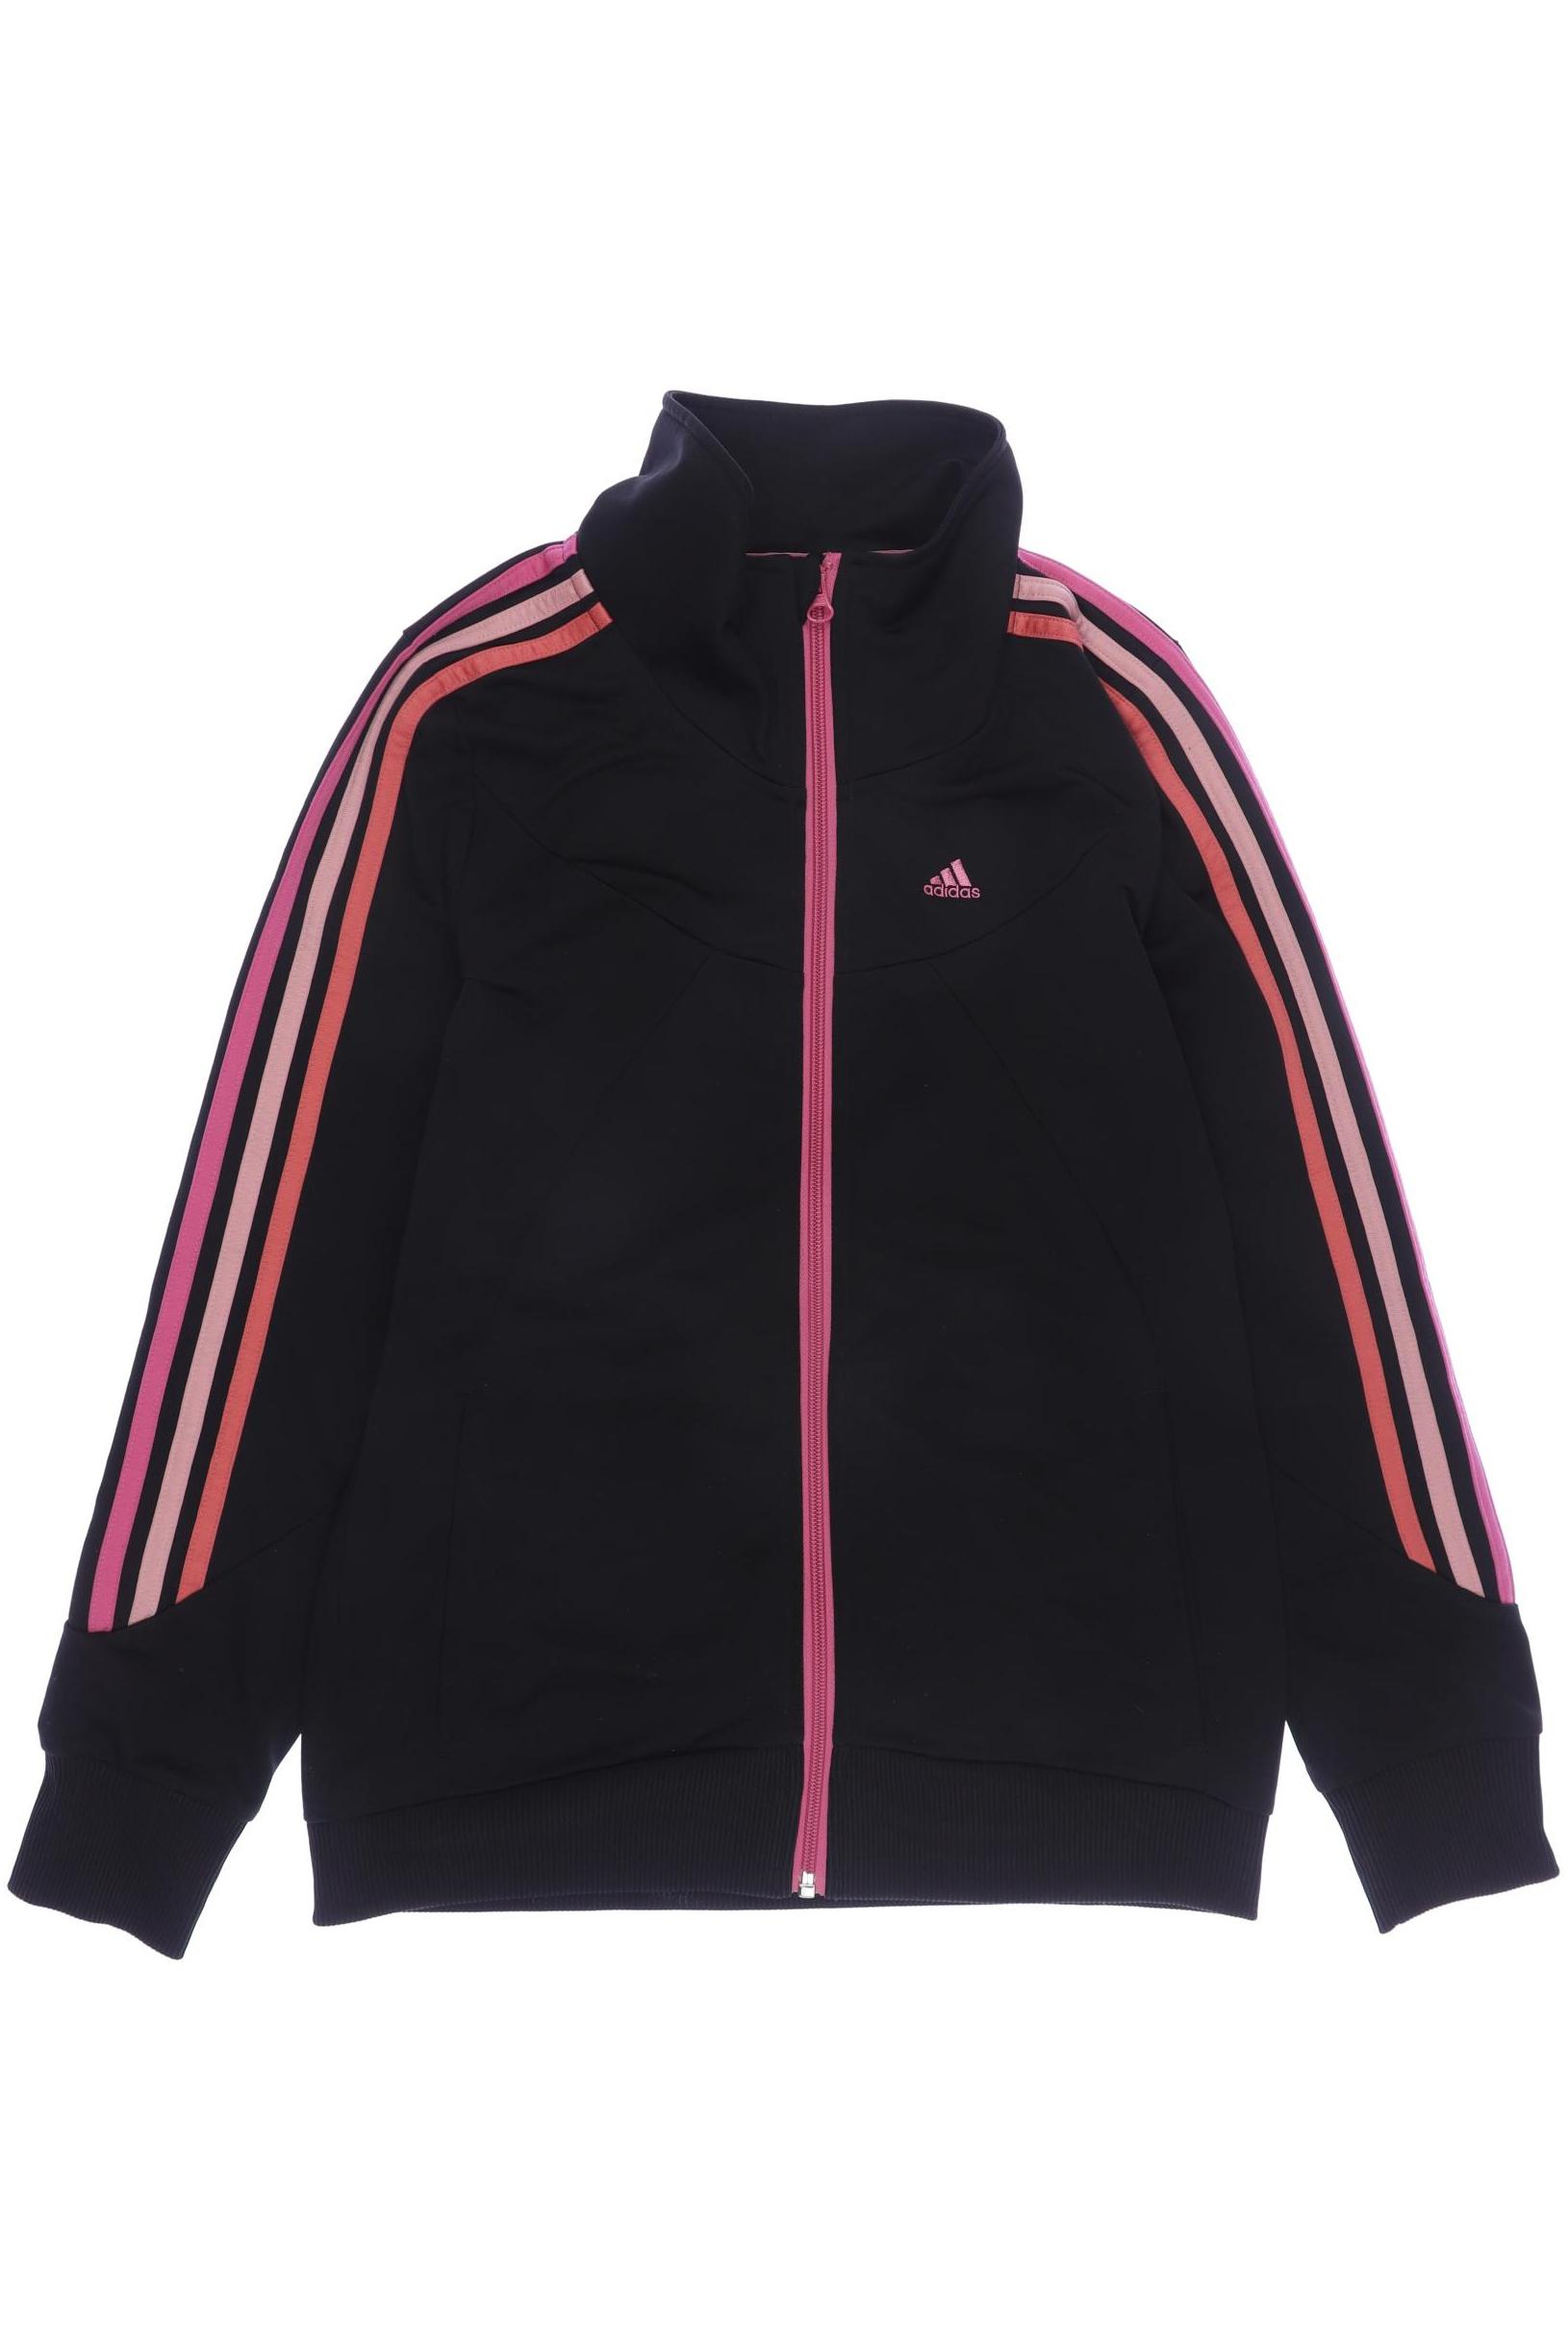 adidas Damen Hoodies & Sweater, schwarz, Gr. 170 von Adidas